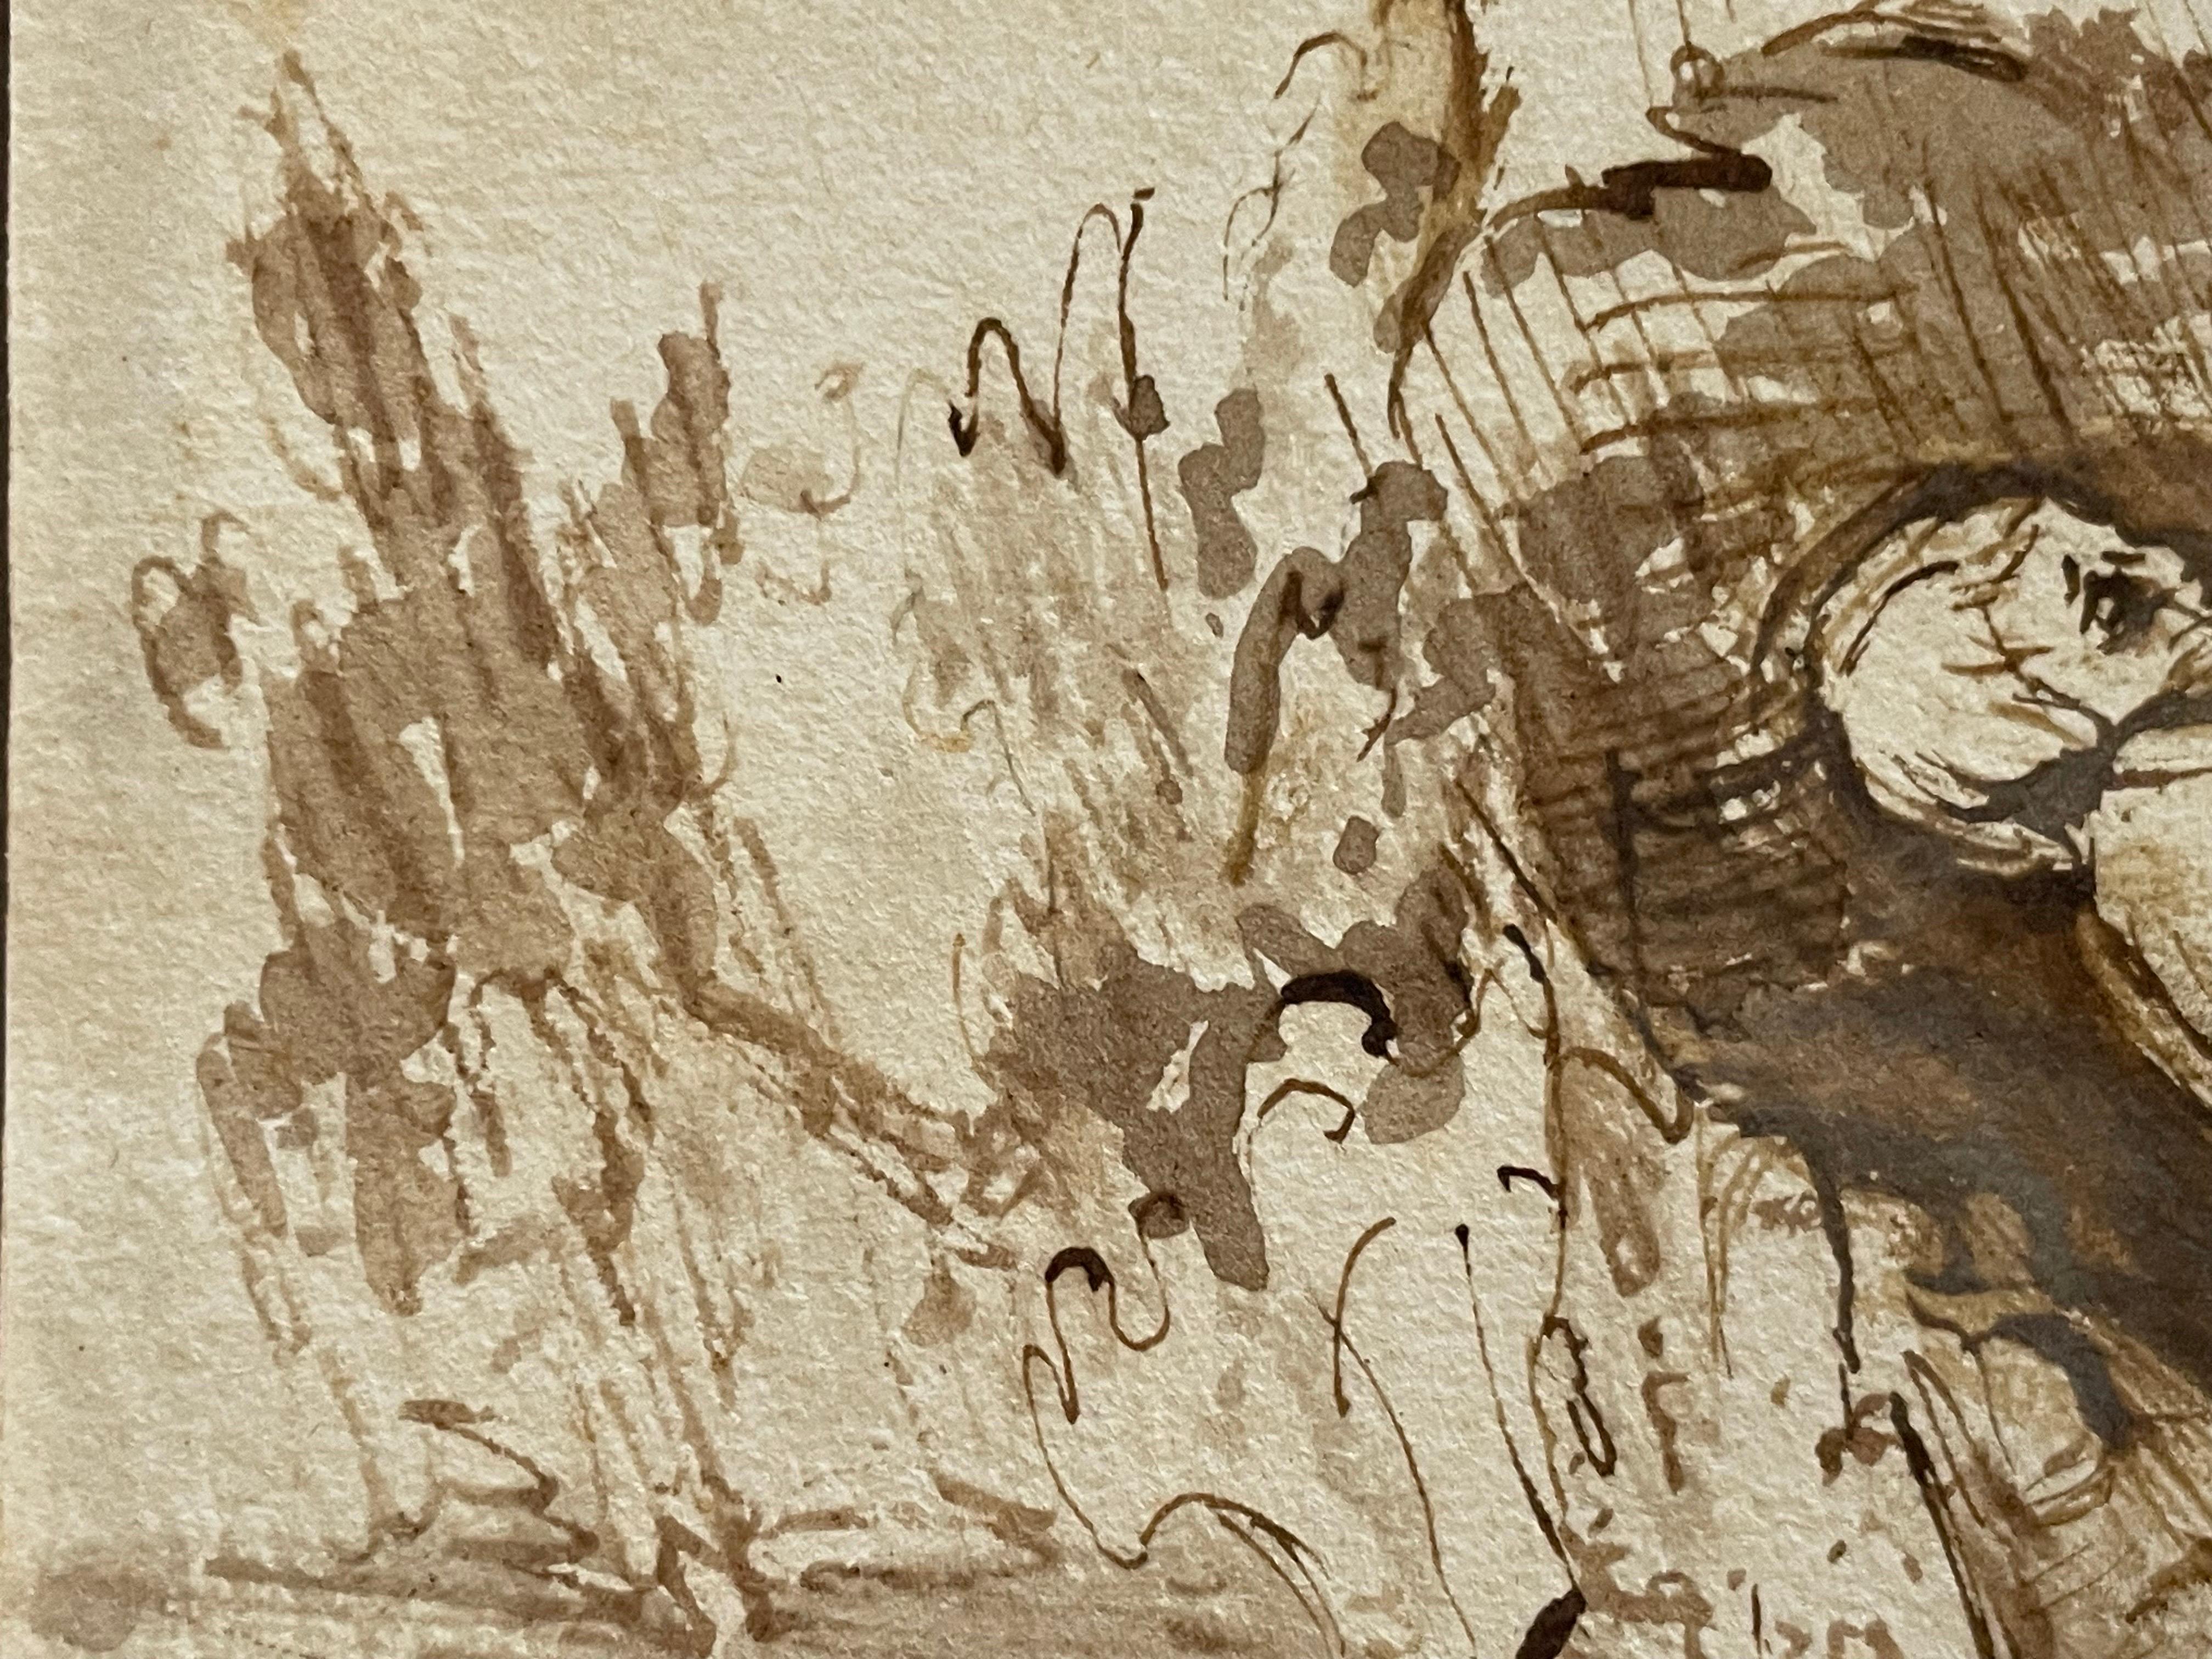 Personnage réconforté (Job ?)
cercle de Willem Drost (hollandais 1633-1659) *Voir notes ci-dessous
dessin à l'encre et au lavis sur papier (armoiries d'Amsterdam en filigrane)
École hollandaise, milieu du 17e siècle
image : 14.3cm x